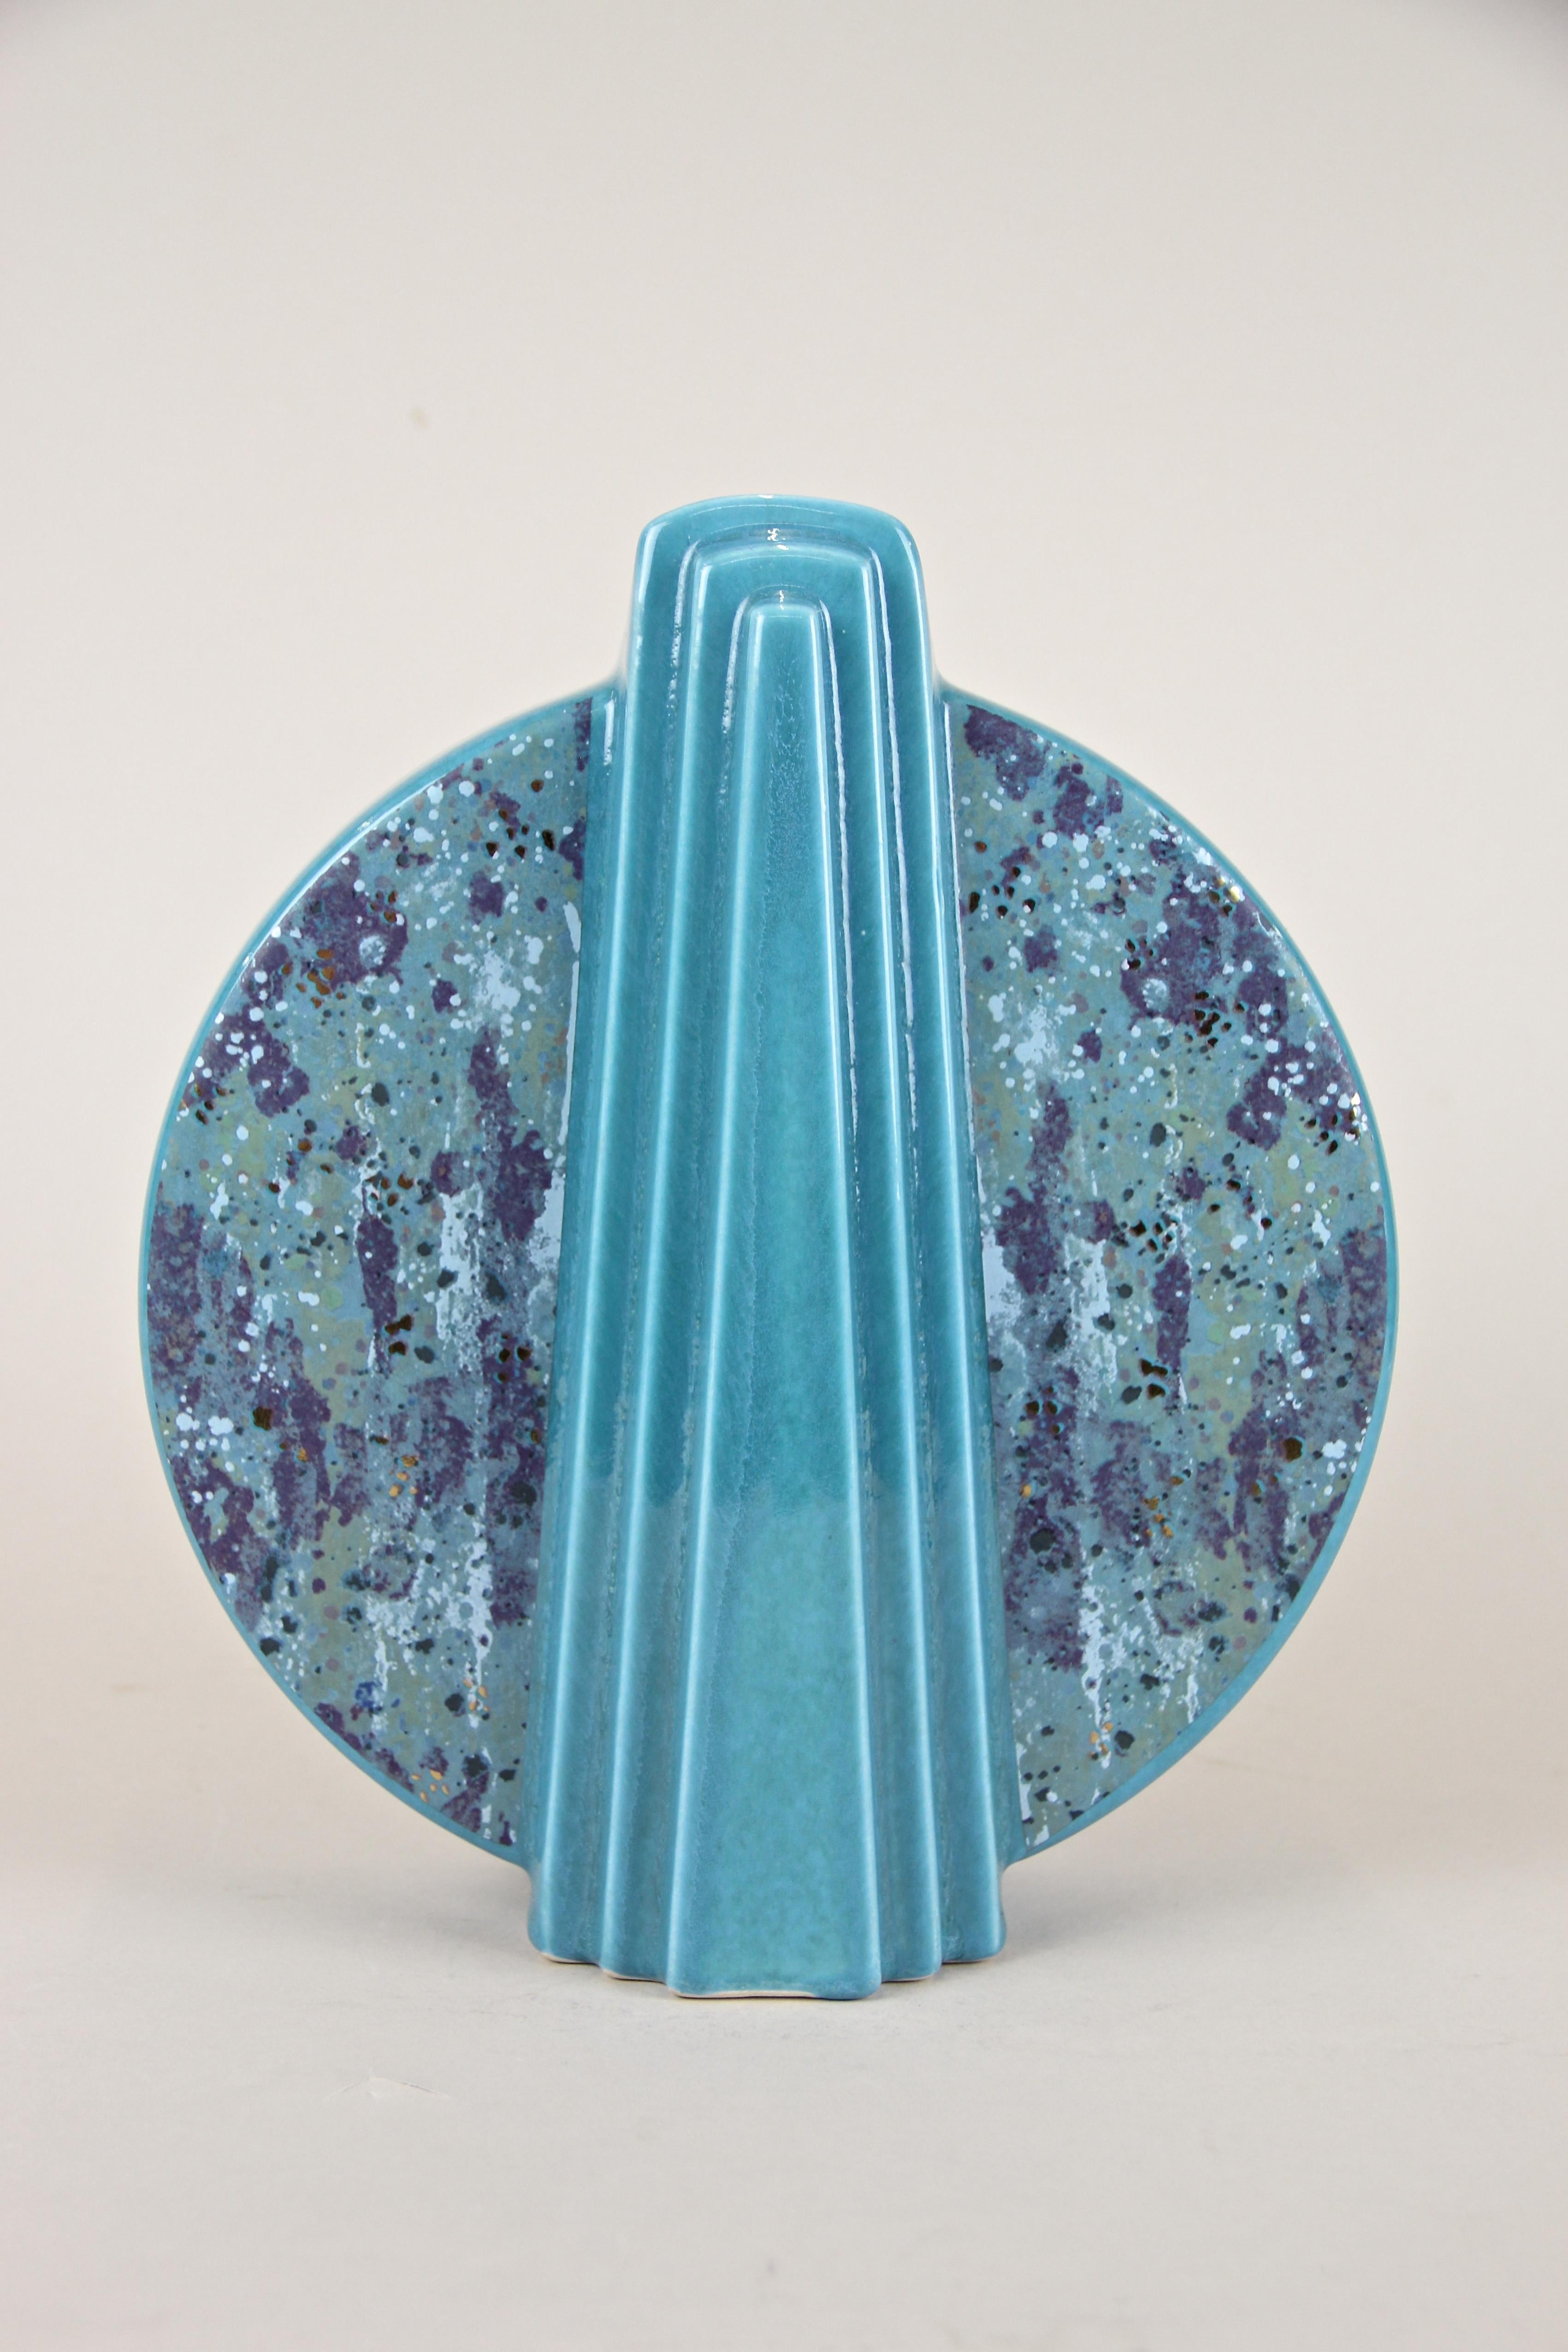 Midcentury Turquoise Ceramic Vase Glazed, Germany, circa 1950 2